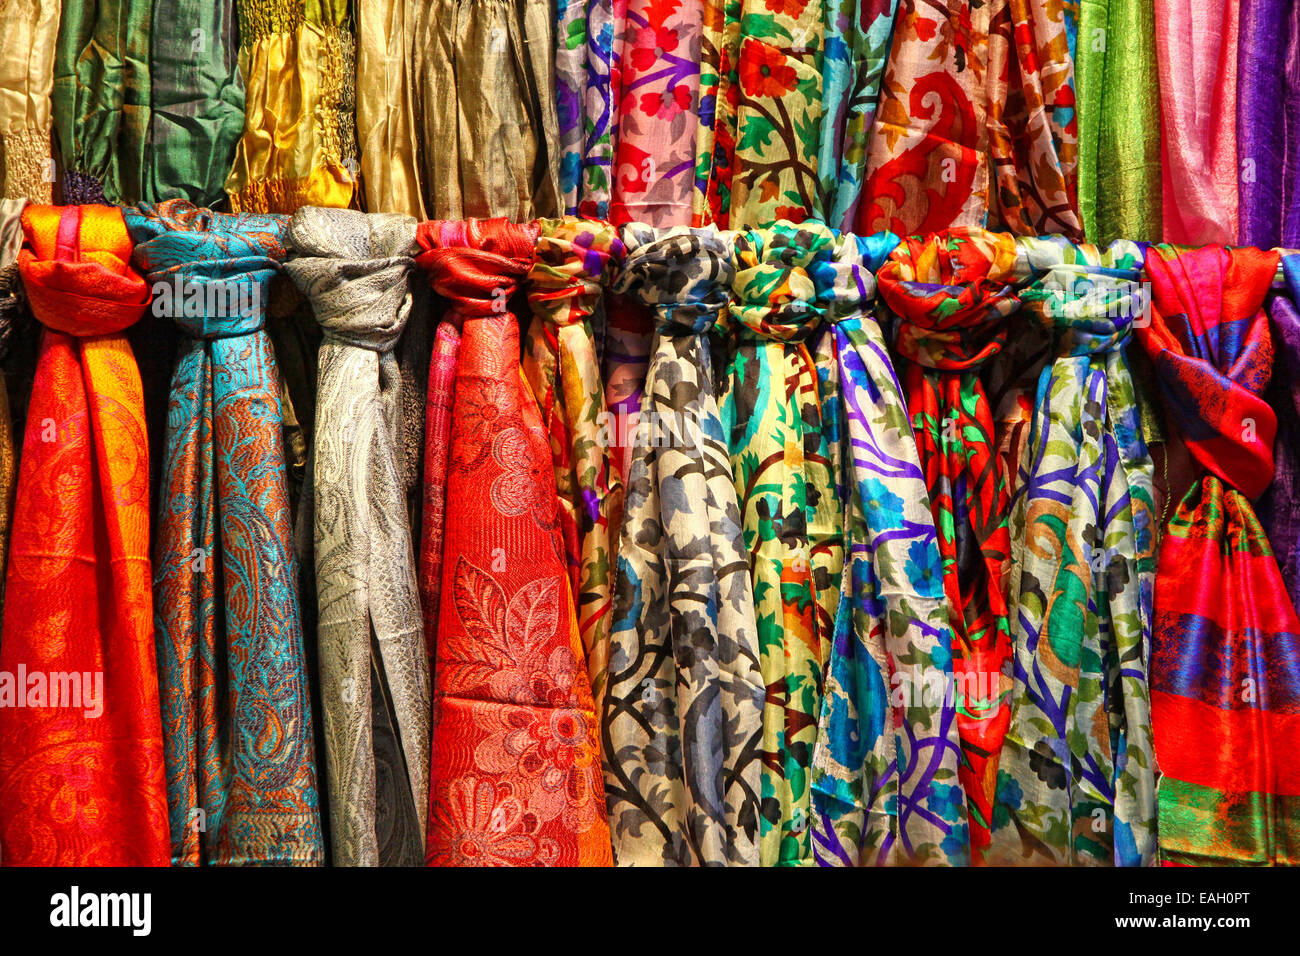 Foulards de soie colorées rangées de hanging at a market stall à Istanbul, Turquie Banque D'Images